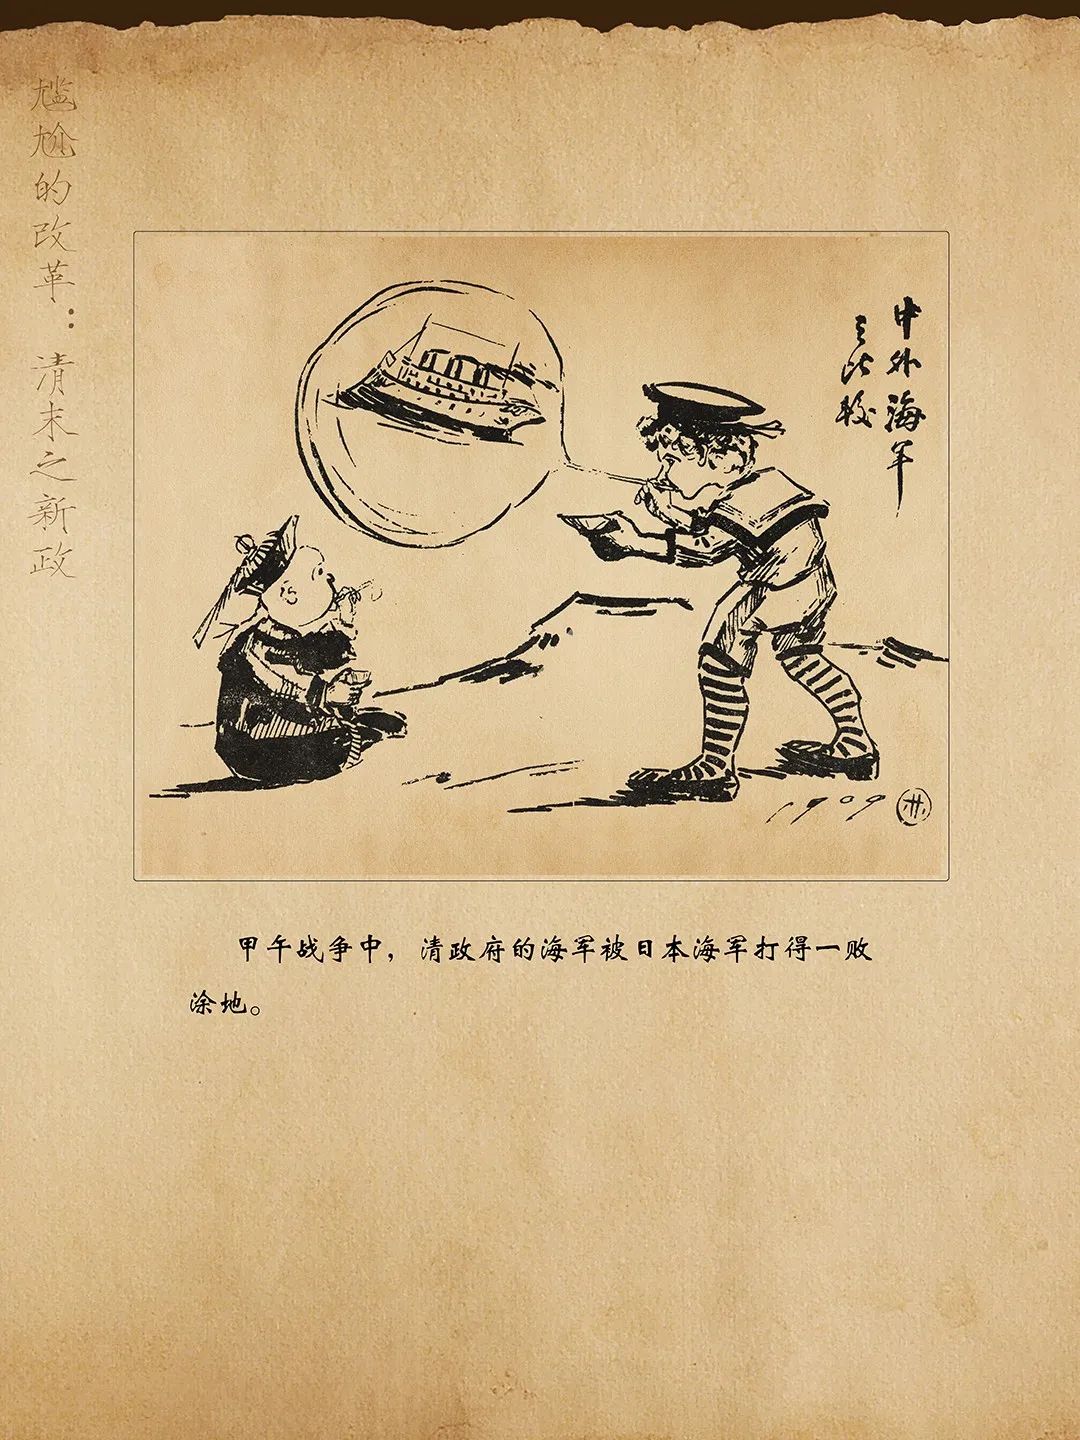 线上展览:历史的放大镜——辛亥革命时期漫画展(五)